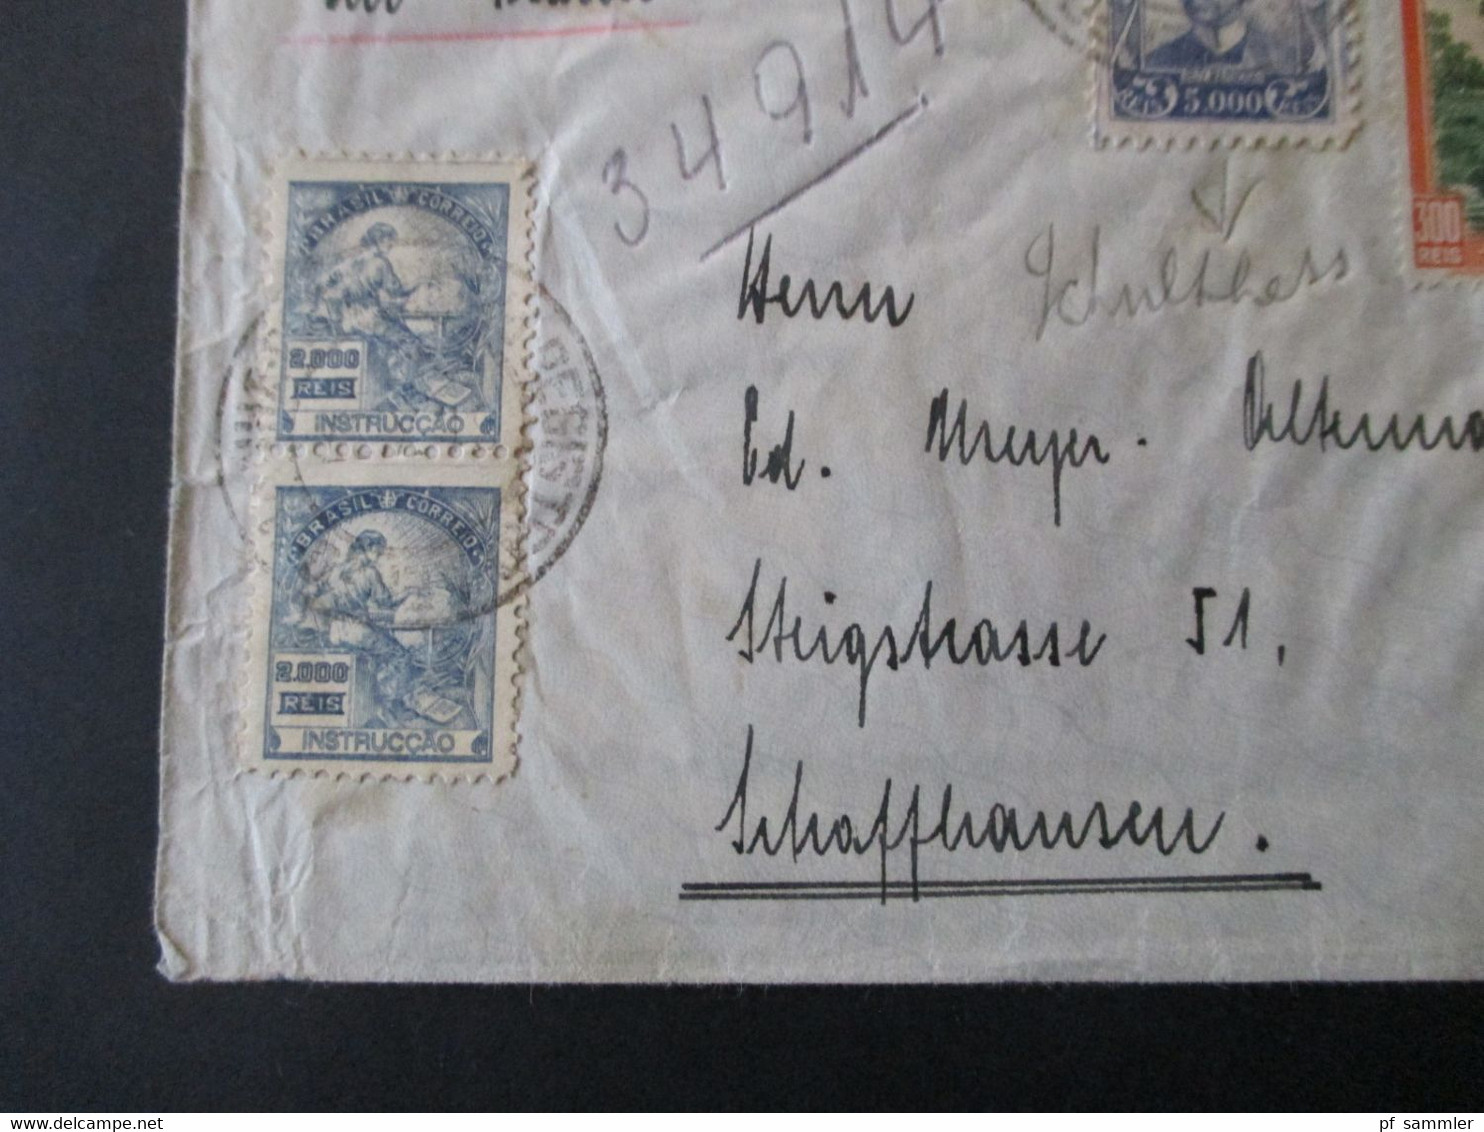 Brasilien 1937 Luftpost In Die Schweiz MiF Mit Fremdenverkehr Landschaften Umschlag Rene Hausheer Pernambuco - Cartas & Documentos